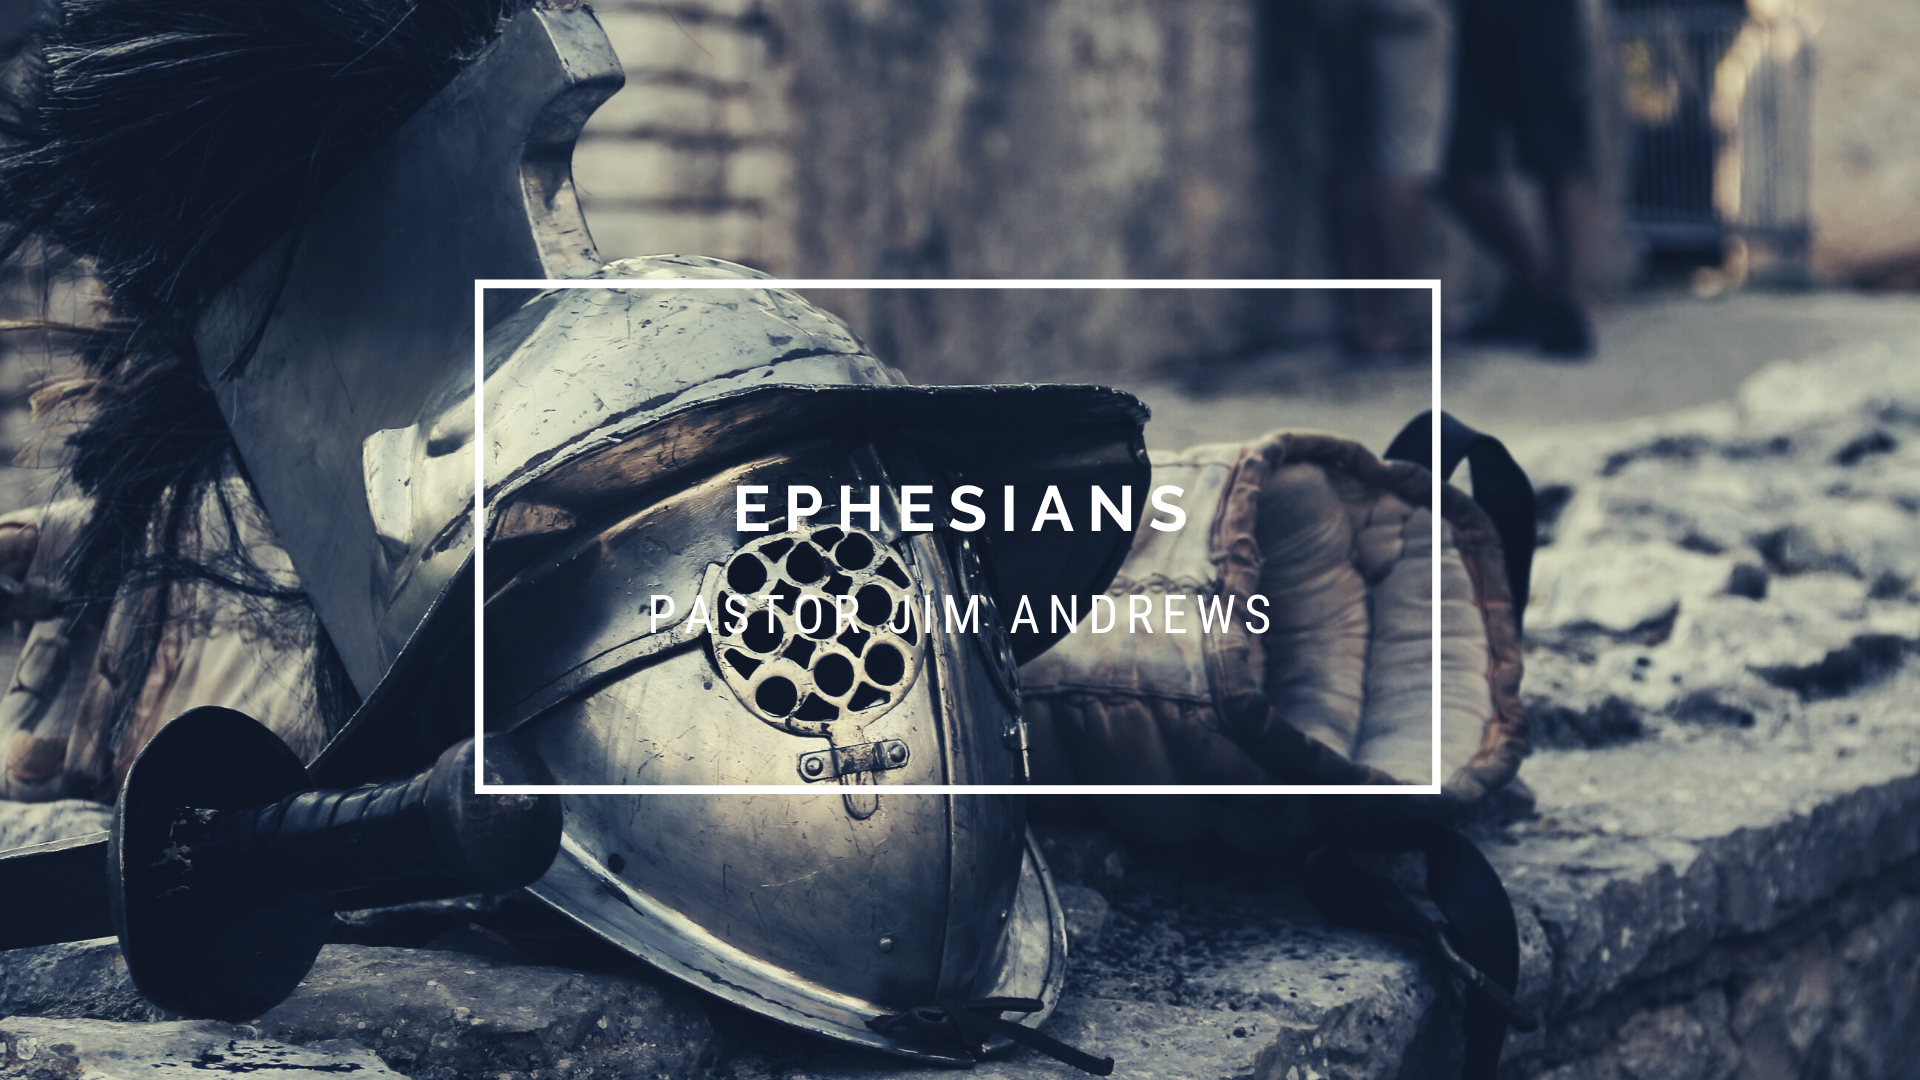 Ephesians 6:16-17